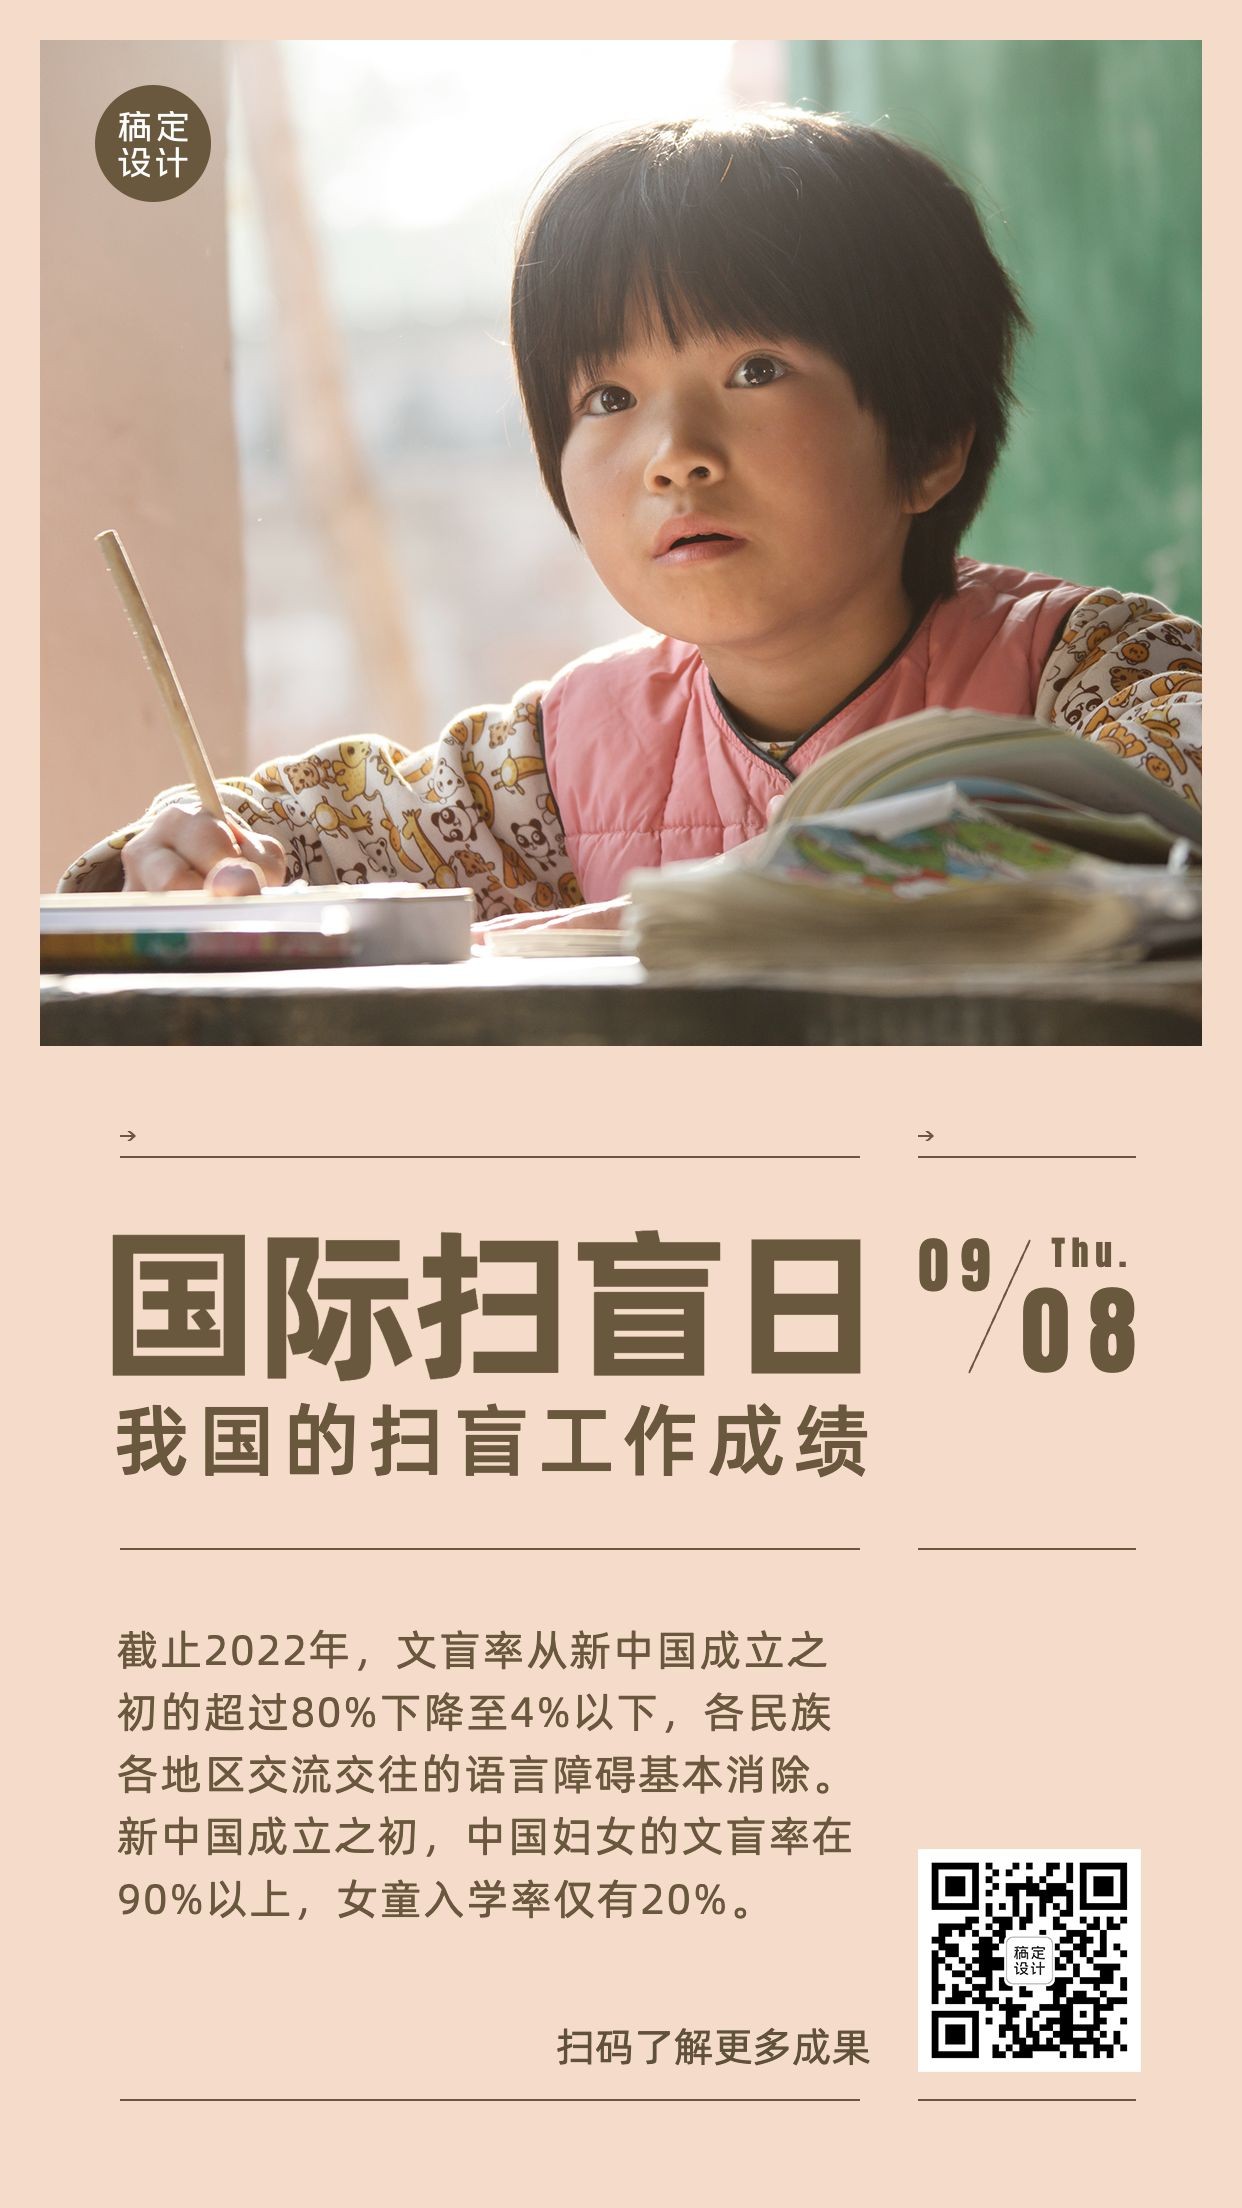 国际扫盲日文化教育实景手机海报预览效果